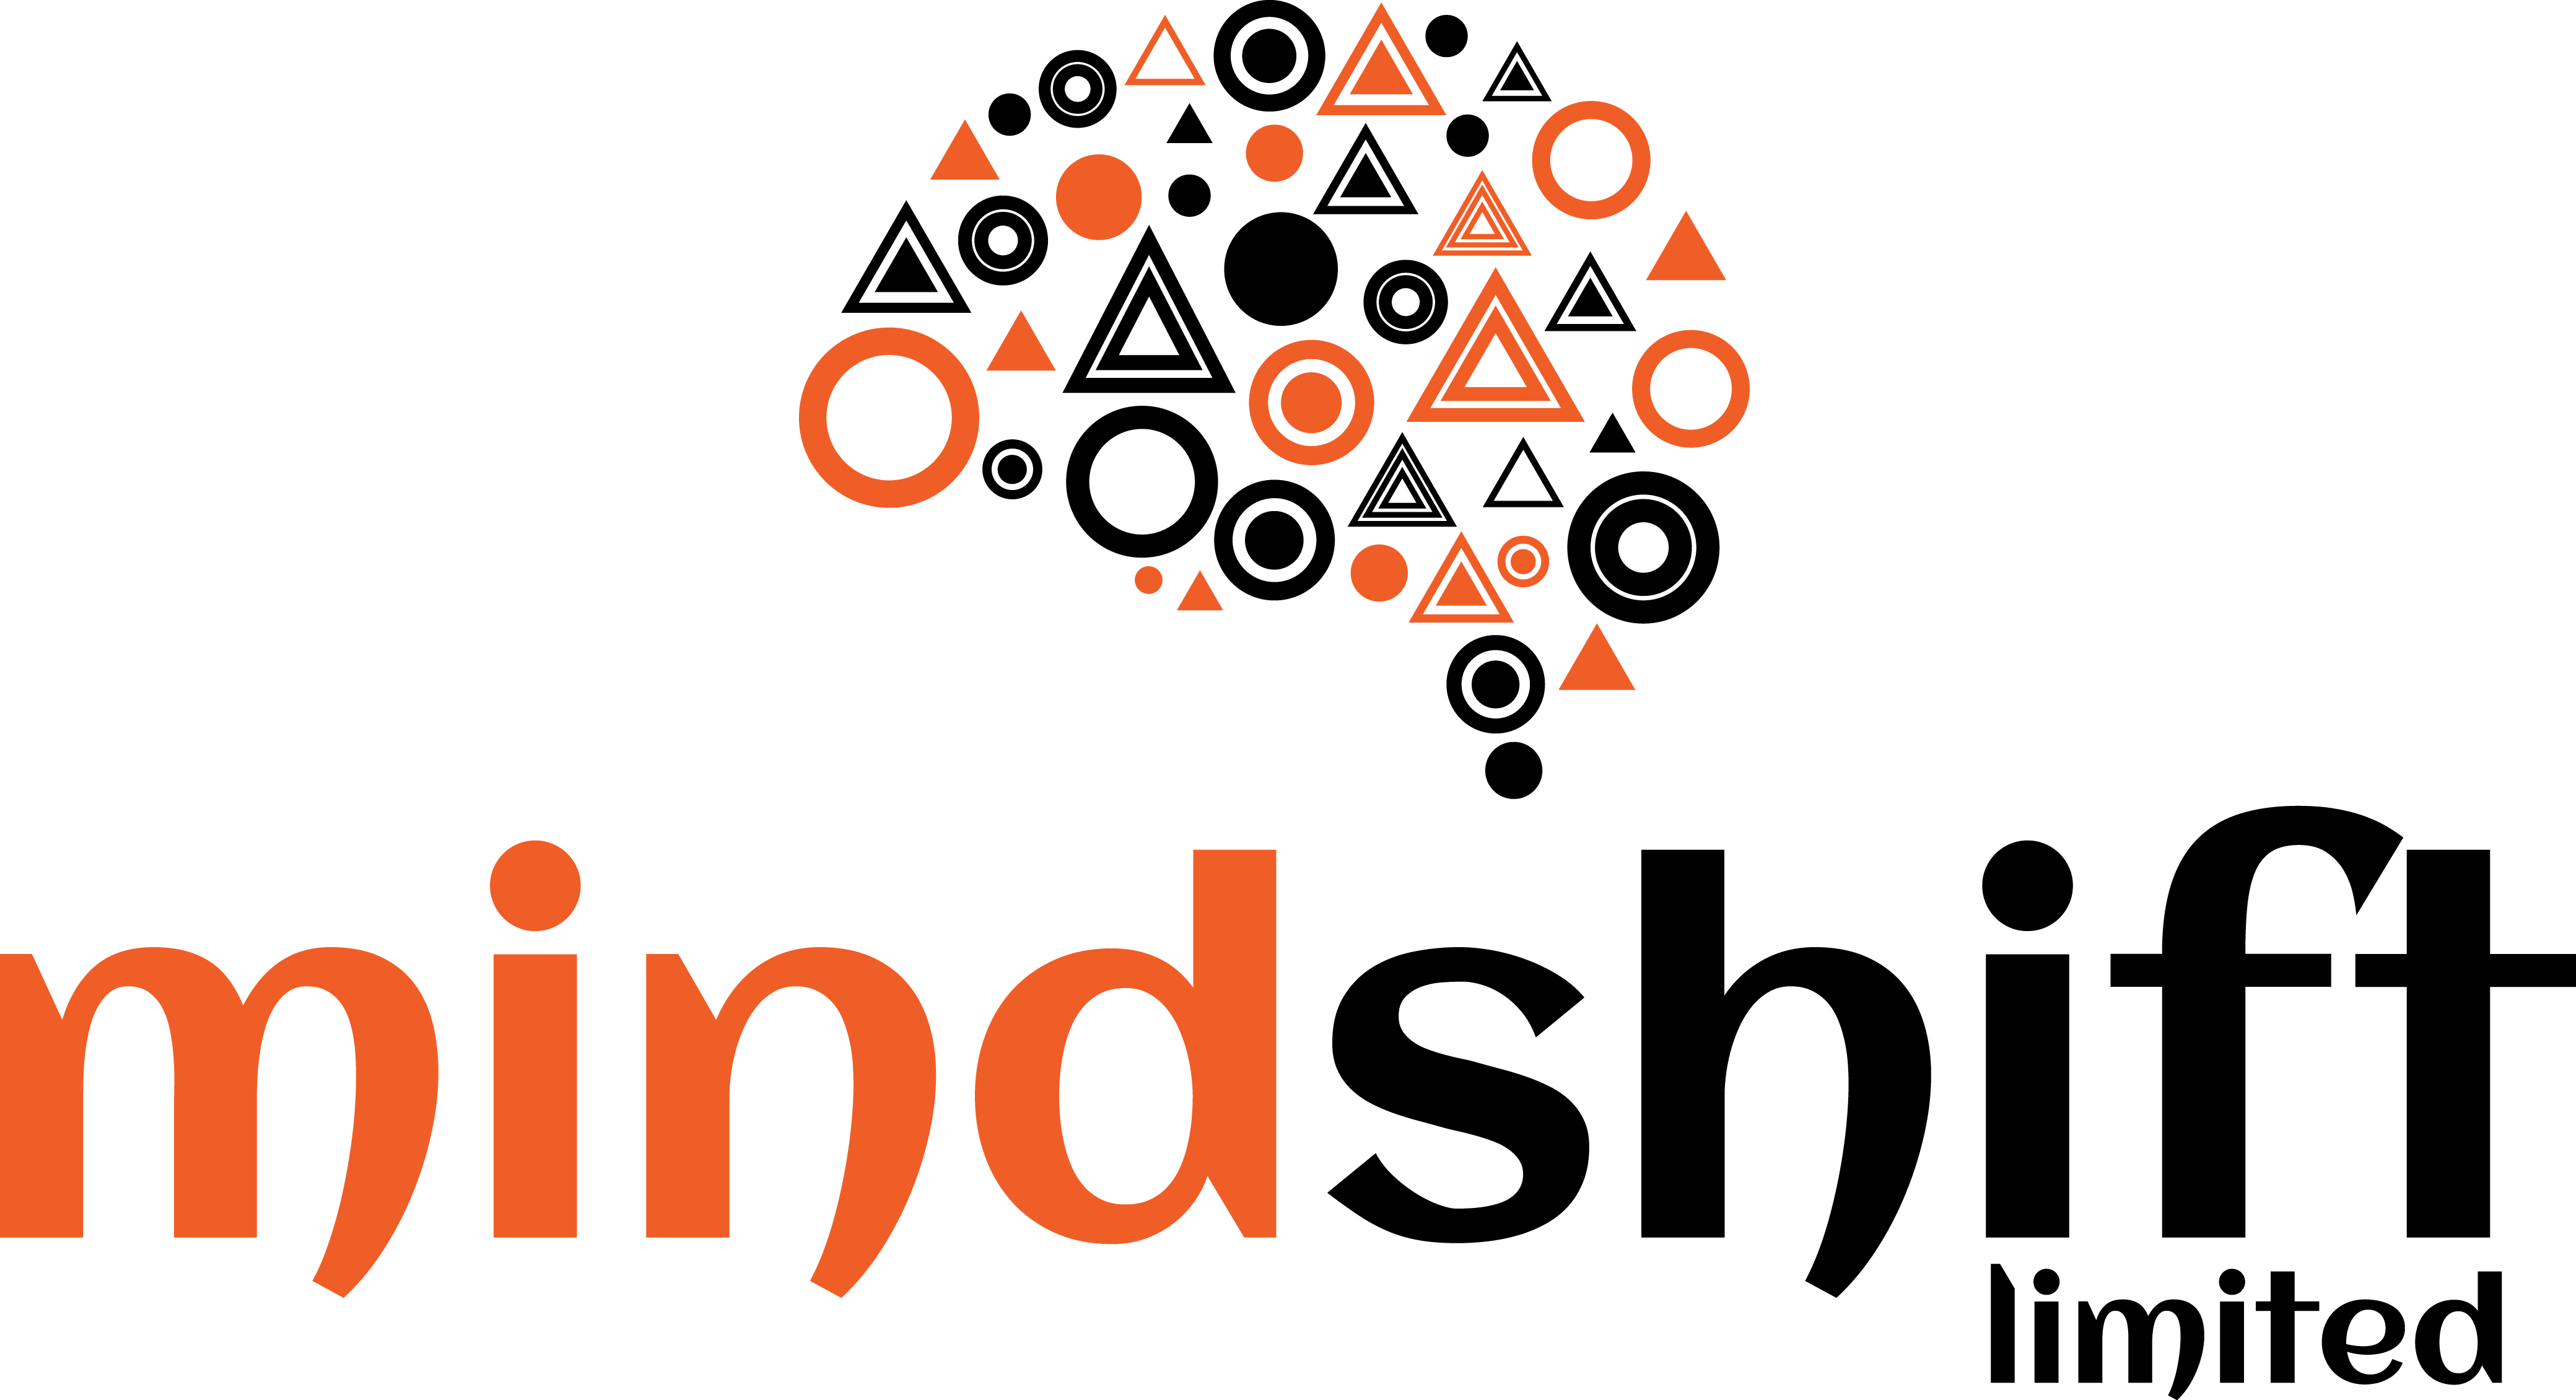 Mindshift-Limited-Orange-Black-Logo-Mindshiftltd-www.mindshiftltd.com-www.mindshiftlimited-digital-marketing-agency-social-media-marketing-media-buying-creative-design-think-creative